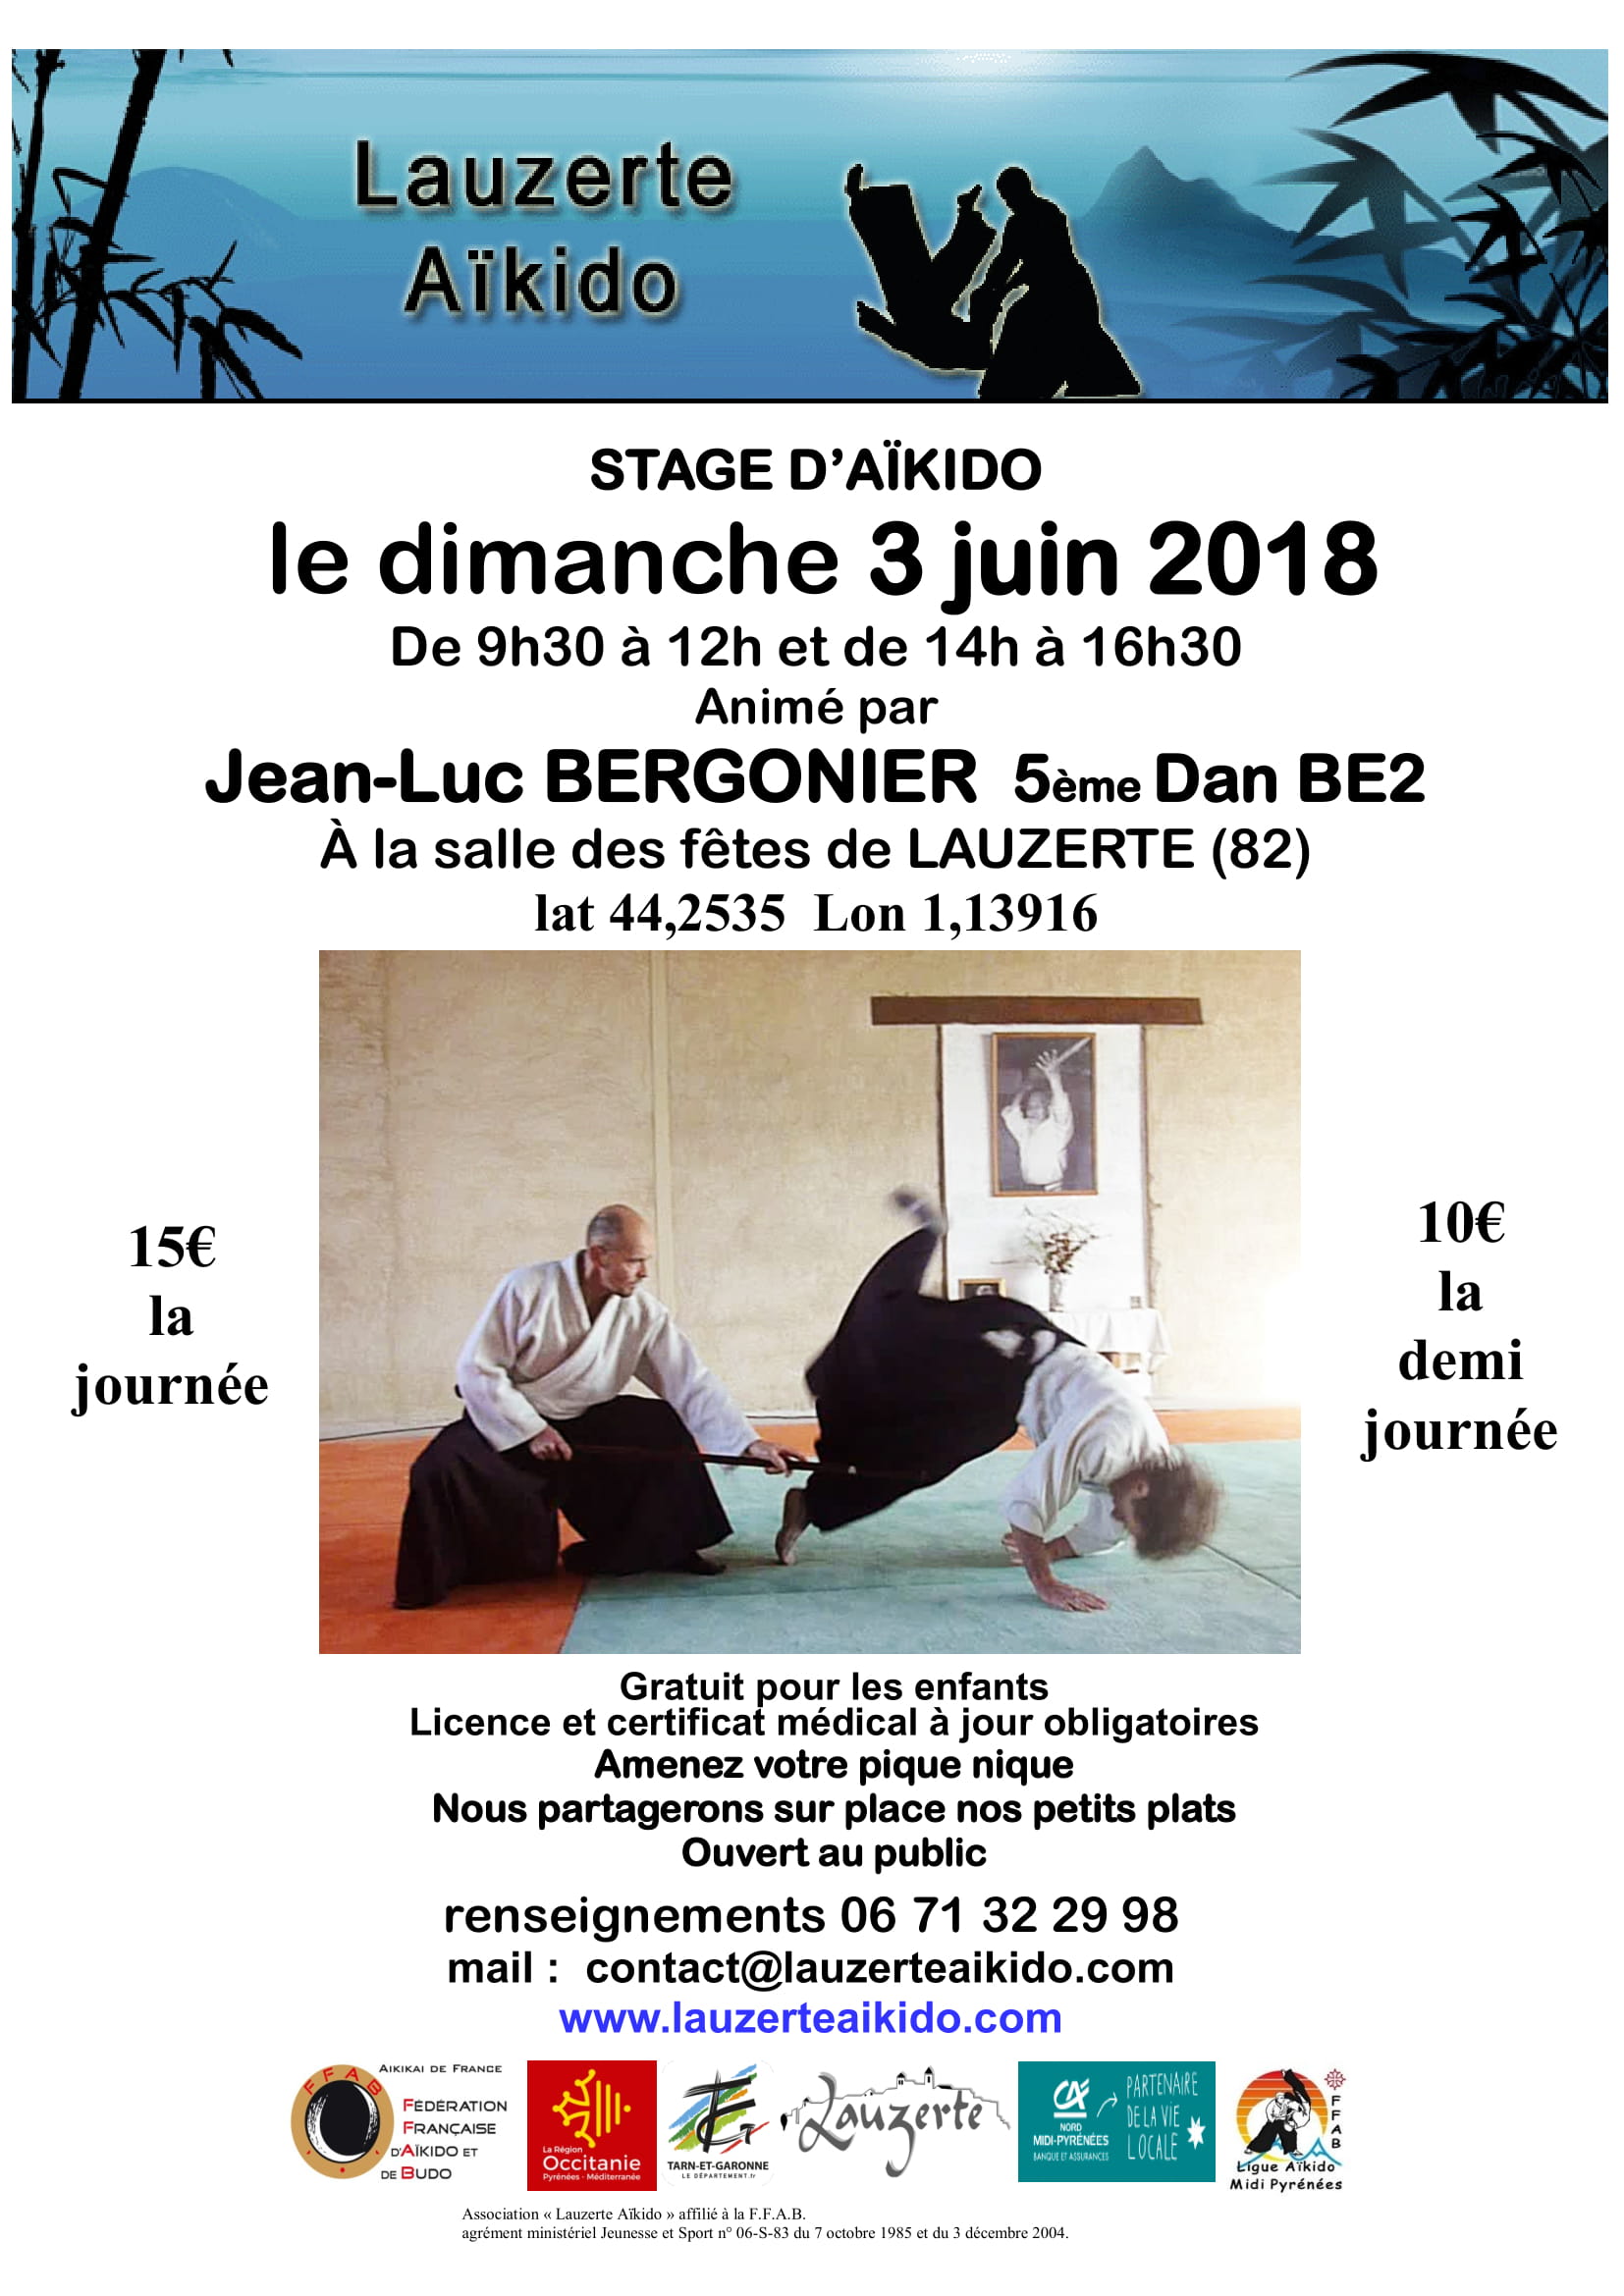 Dimanche 3 Juin 2018 - Stage à Lauzerte avec Jean-Luc Bergonier 5ème Dan